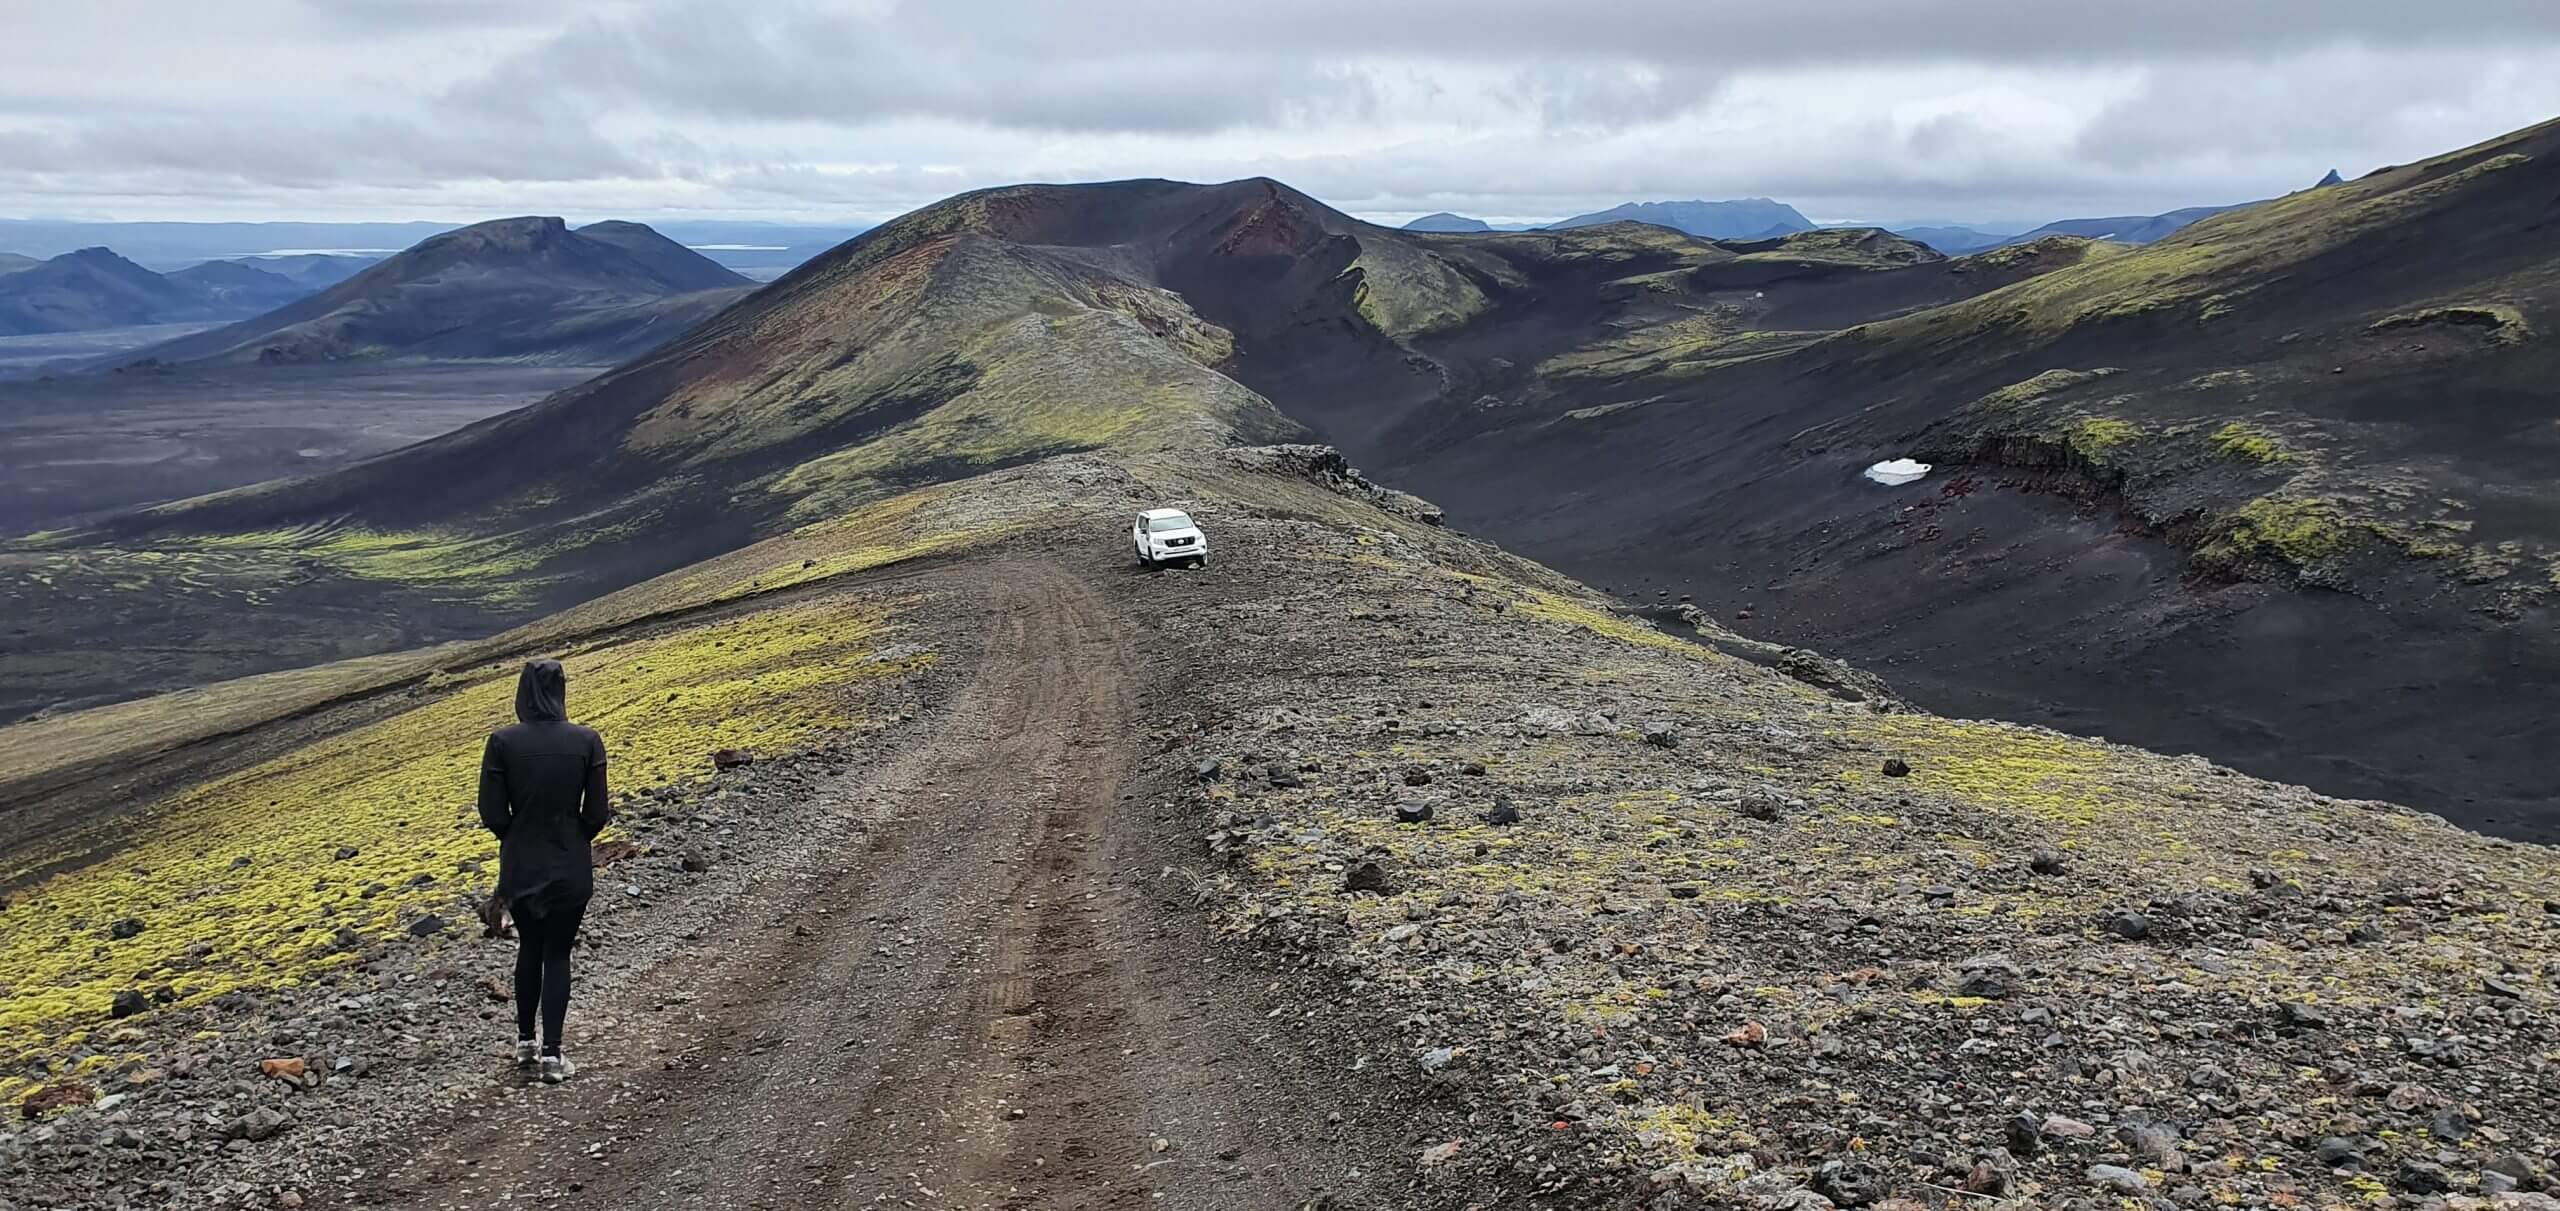 Day 5 – Hekla Highlands